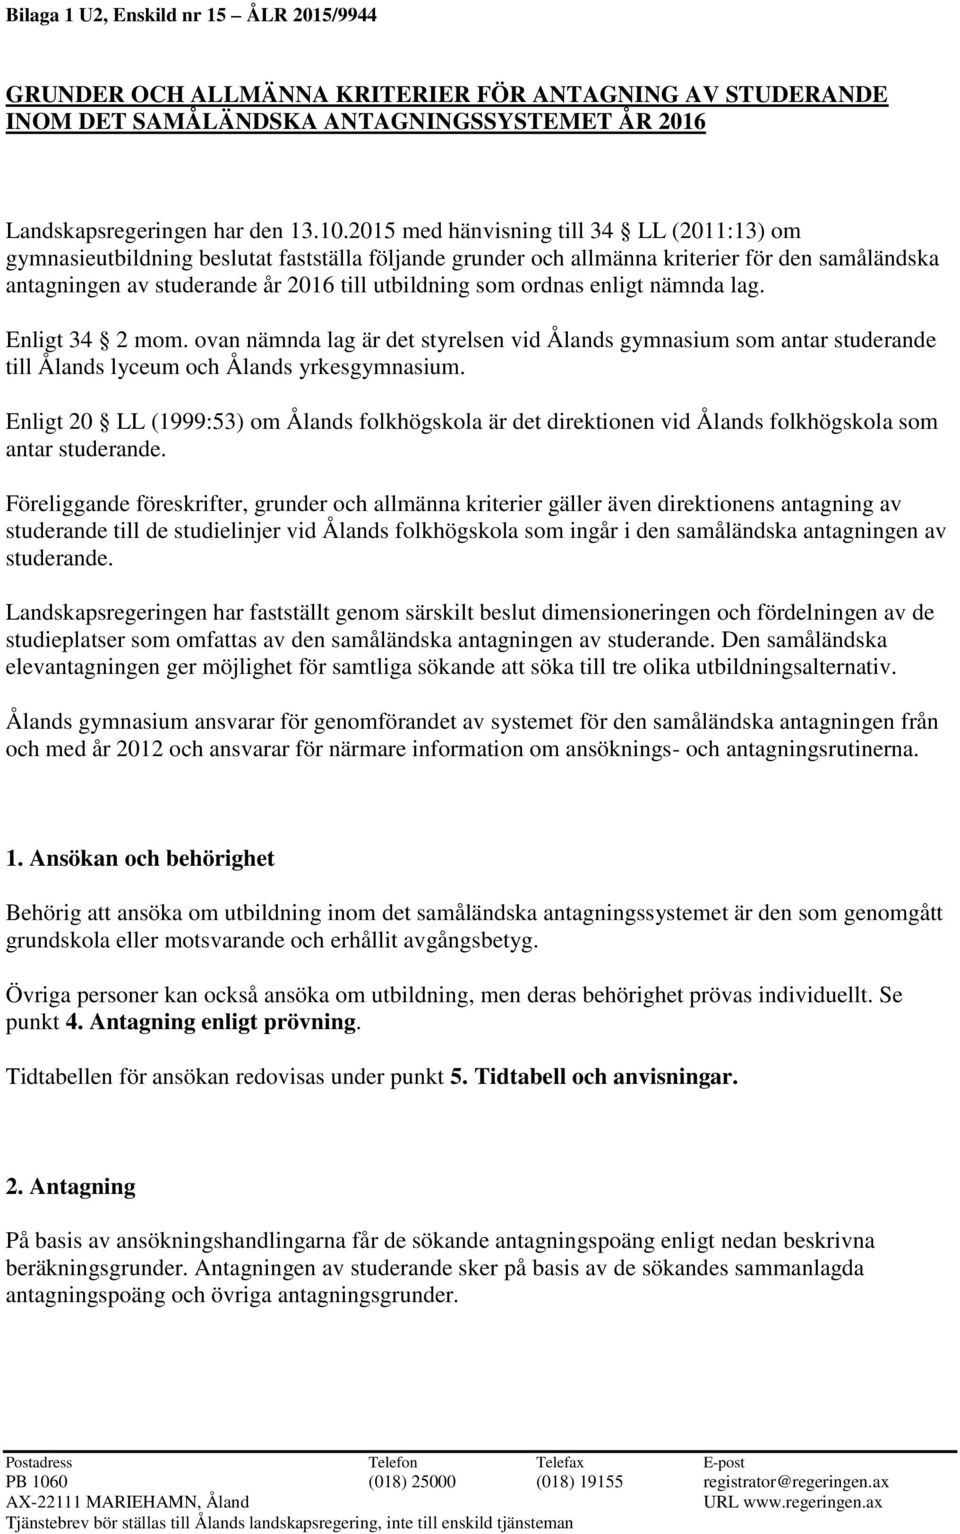 ordnas enligt nämnda lag. Enligt 34 2 mom. ovan nämnda lag är det styrelsen vid Ålands gymnasium som antar studerande till Ålands lyceum och Ålands yrkesgymnasium.